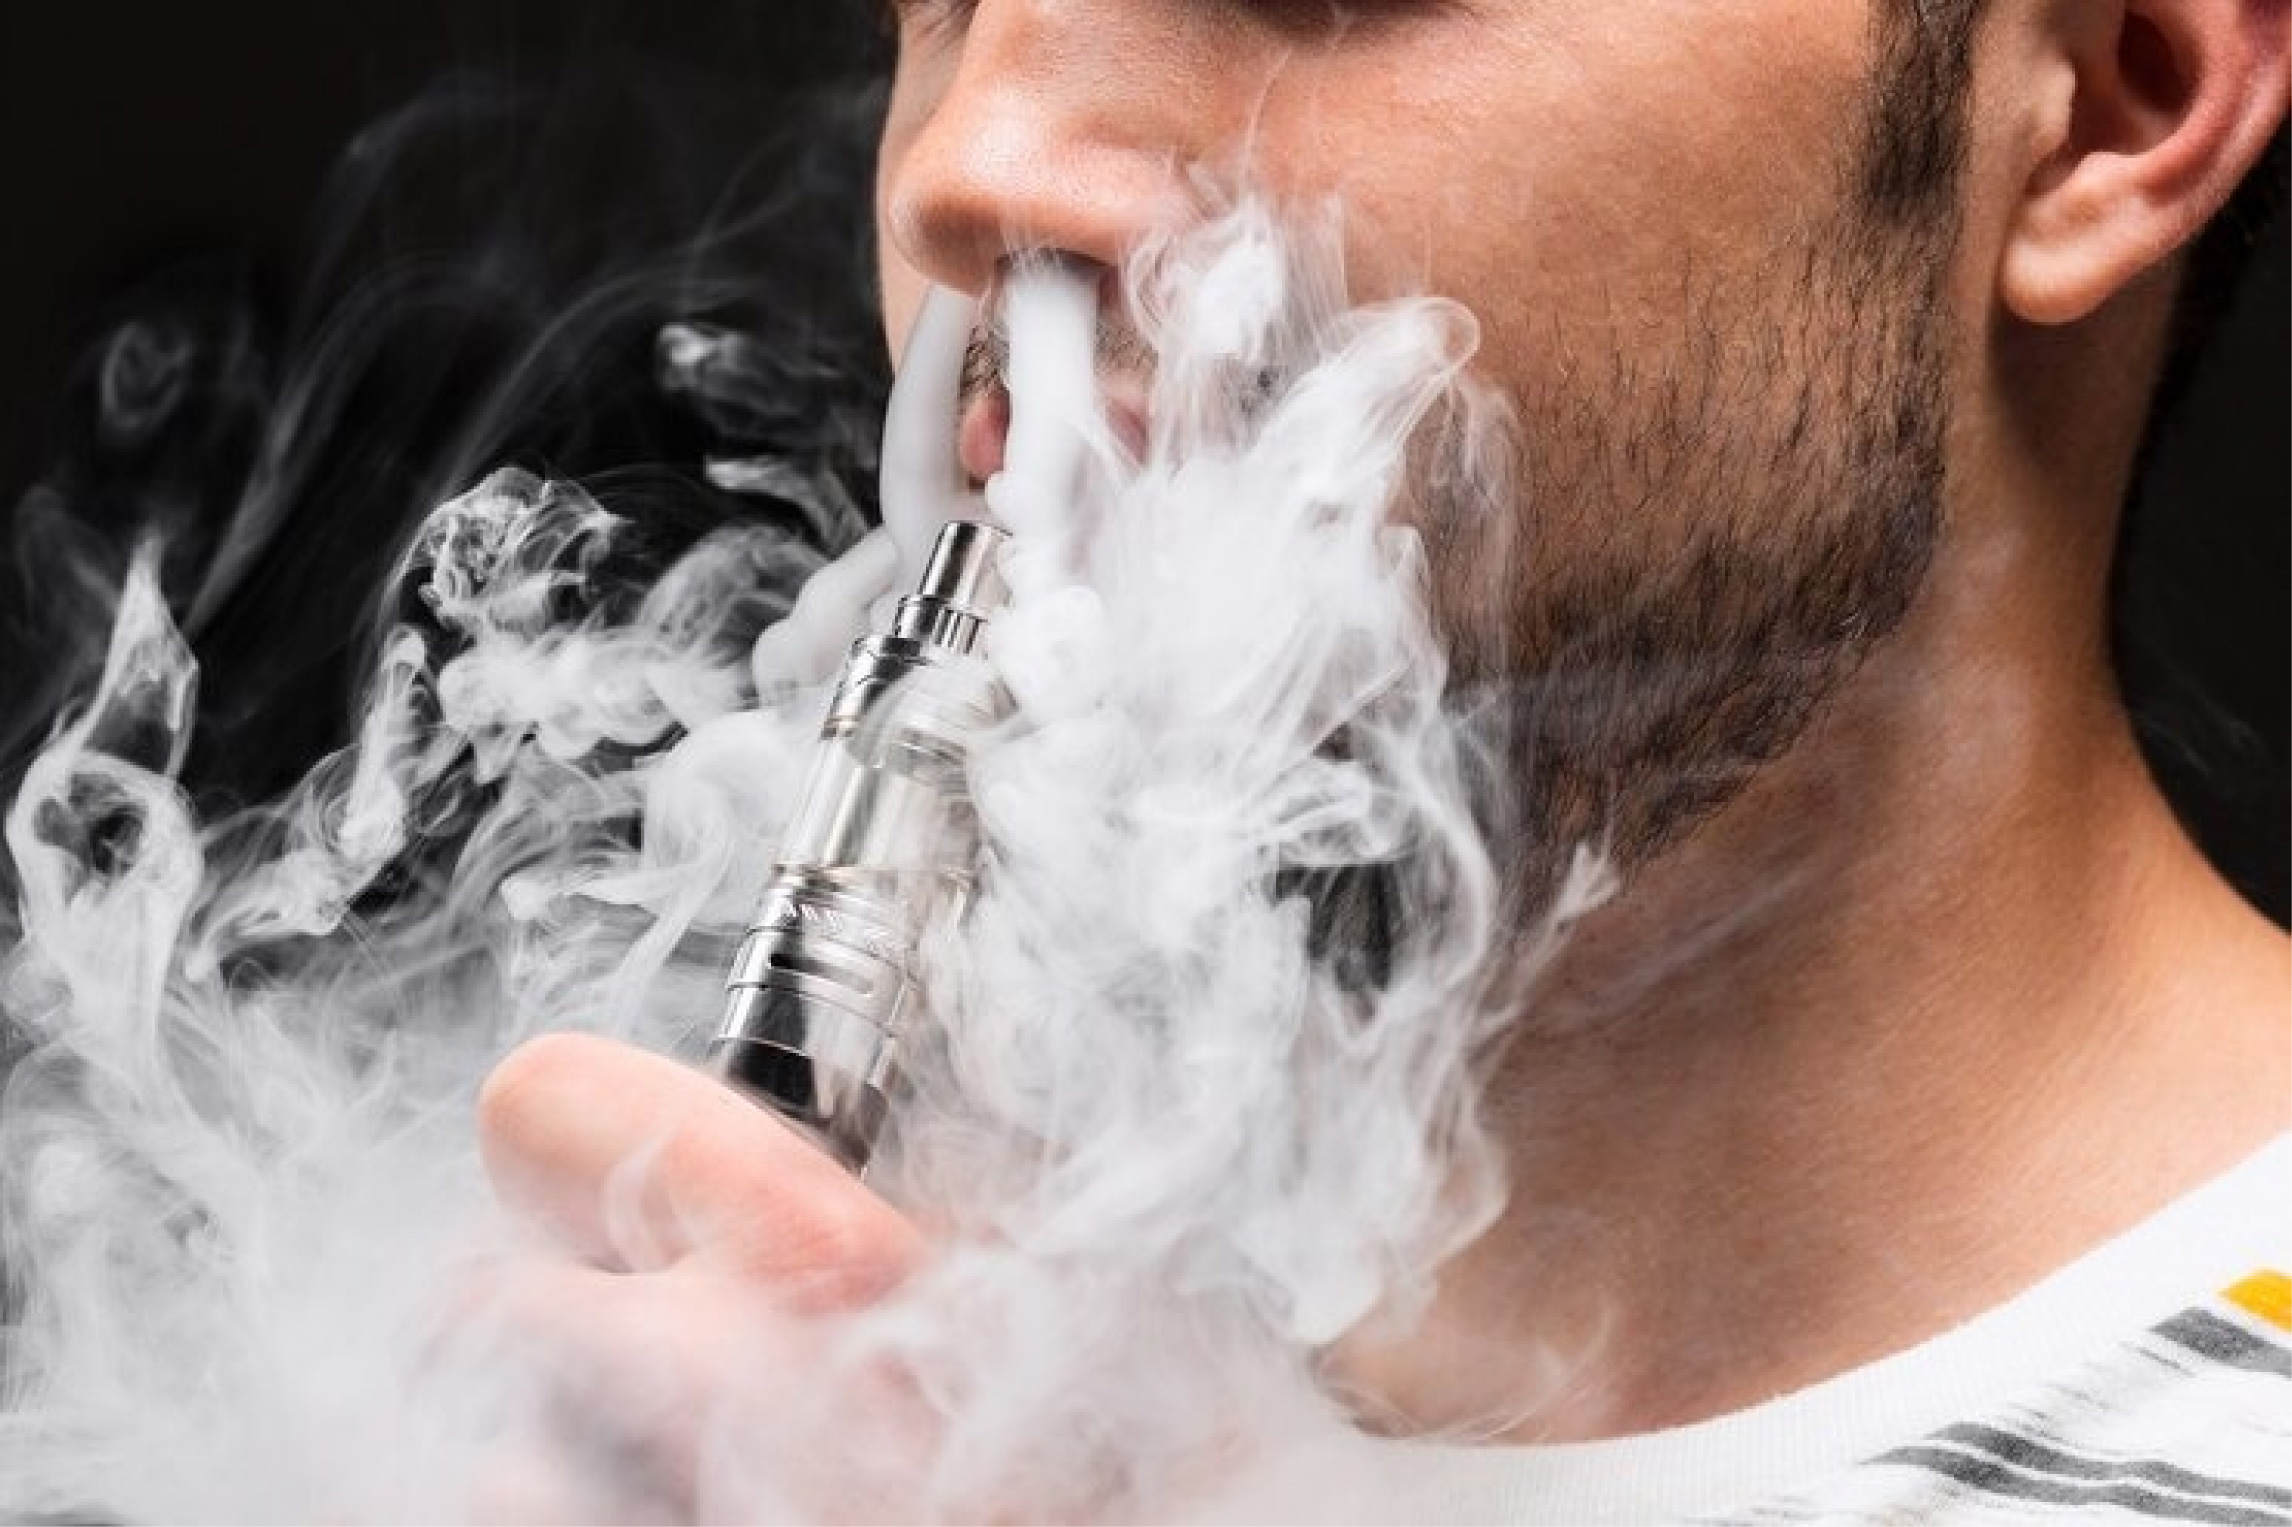 Uso de vapeadores supera al tabaco tradicional entre adolescentes